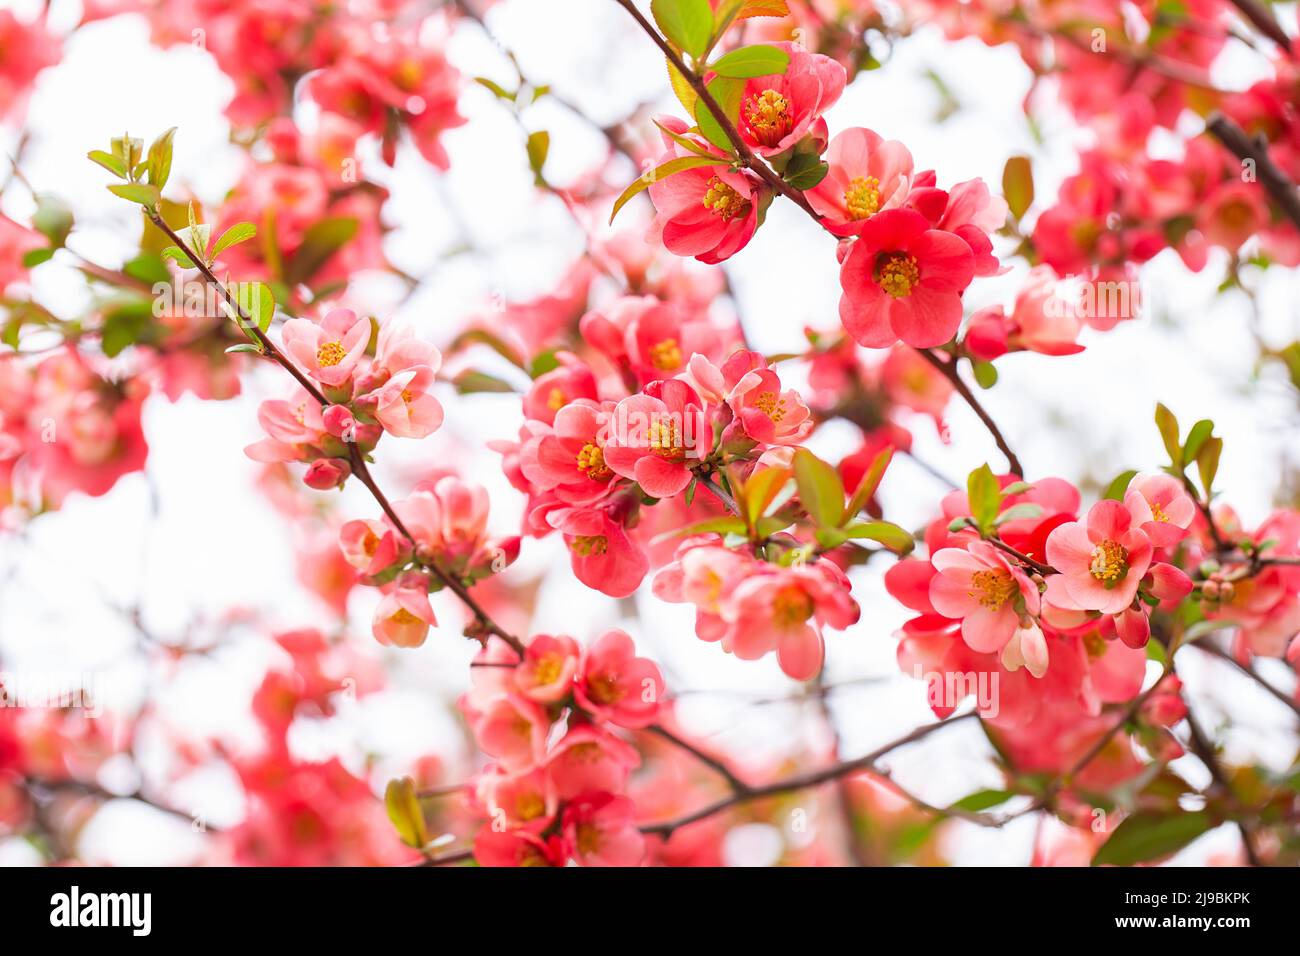 Leuchtend rote Blüten einer blühenden Quitte, Chaenomeles speciosa, Strauch. Ein dorniger Laub- oder halbimmergrüner Strauch, auch bekannt als japanische Quitte oder Chi Stockfoto